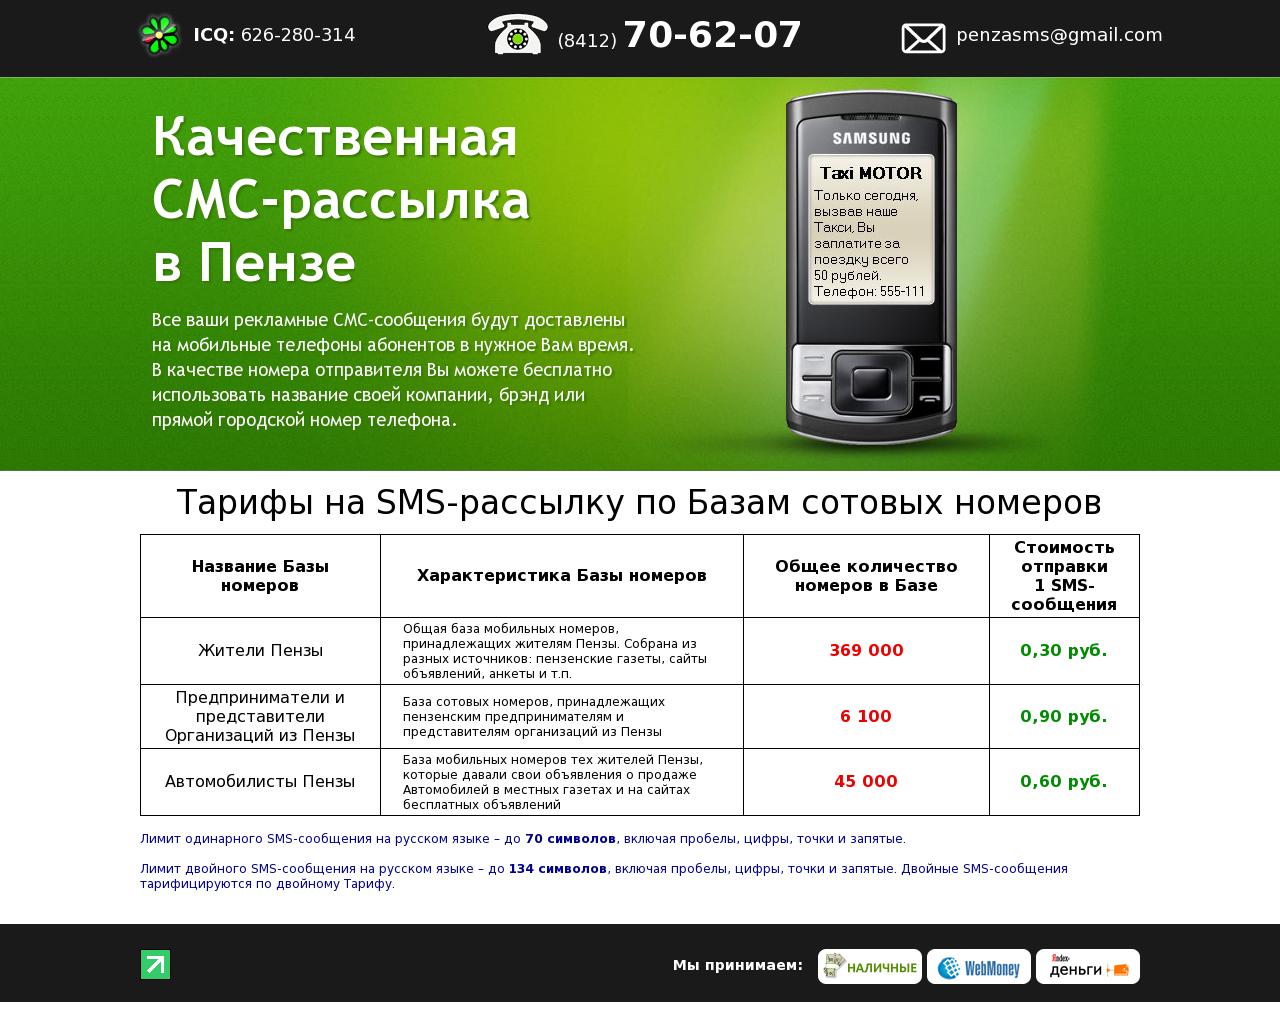 Изображение сайта penza-sms.ru в разрешении 1280x1024